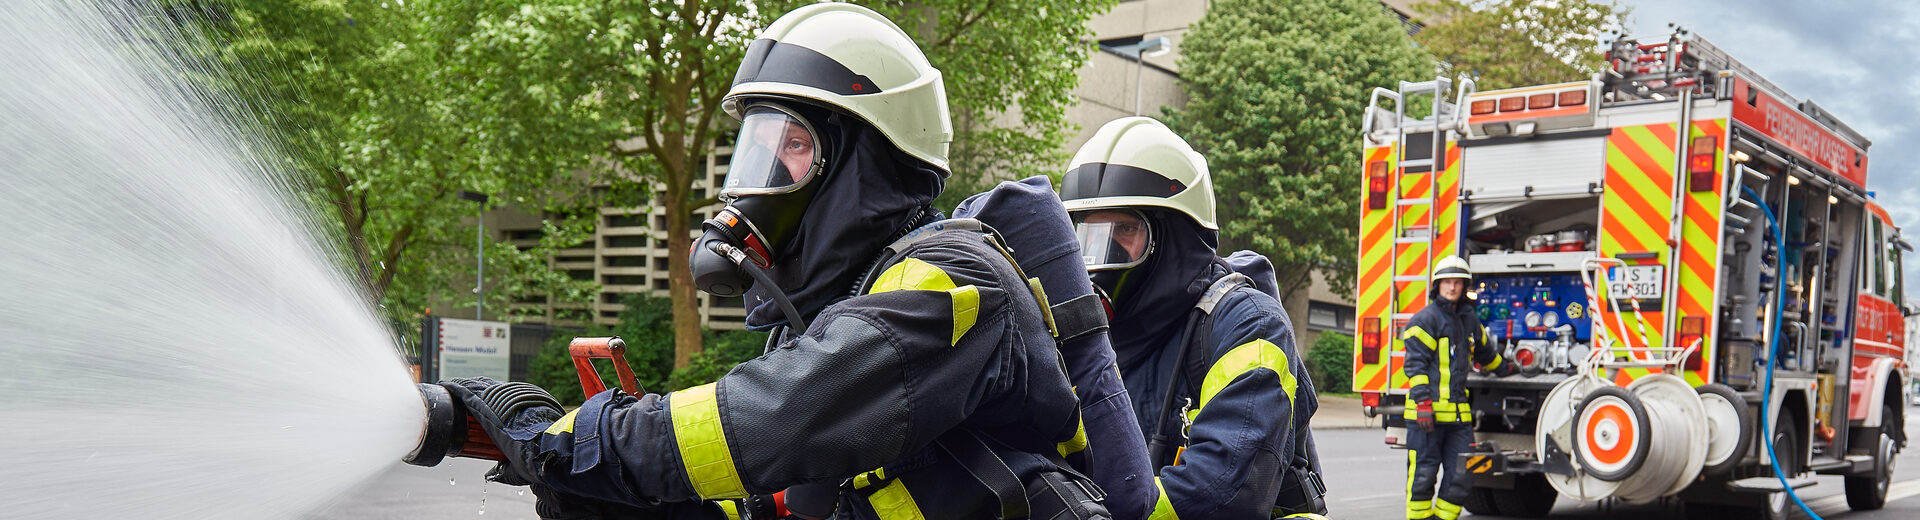 Feuerwehr Kassel bei einem Einsatz mit Wasserspritze